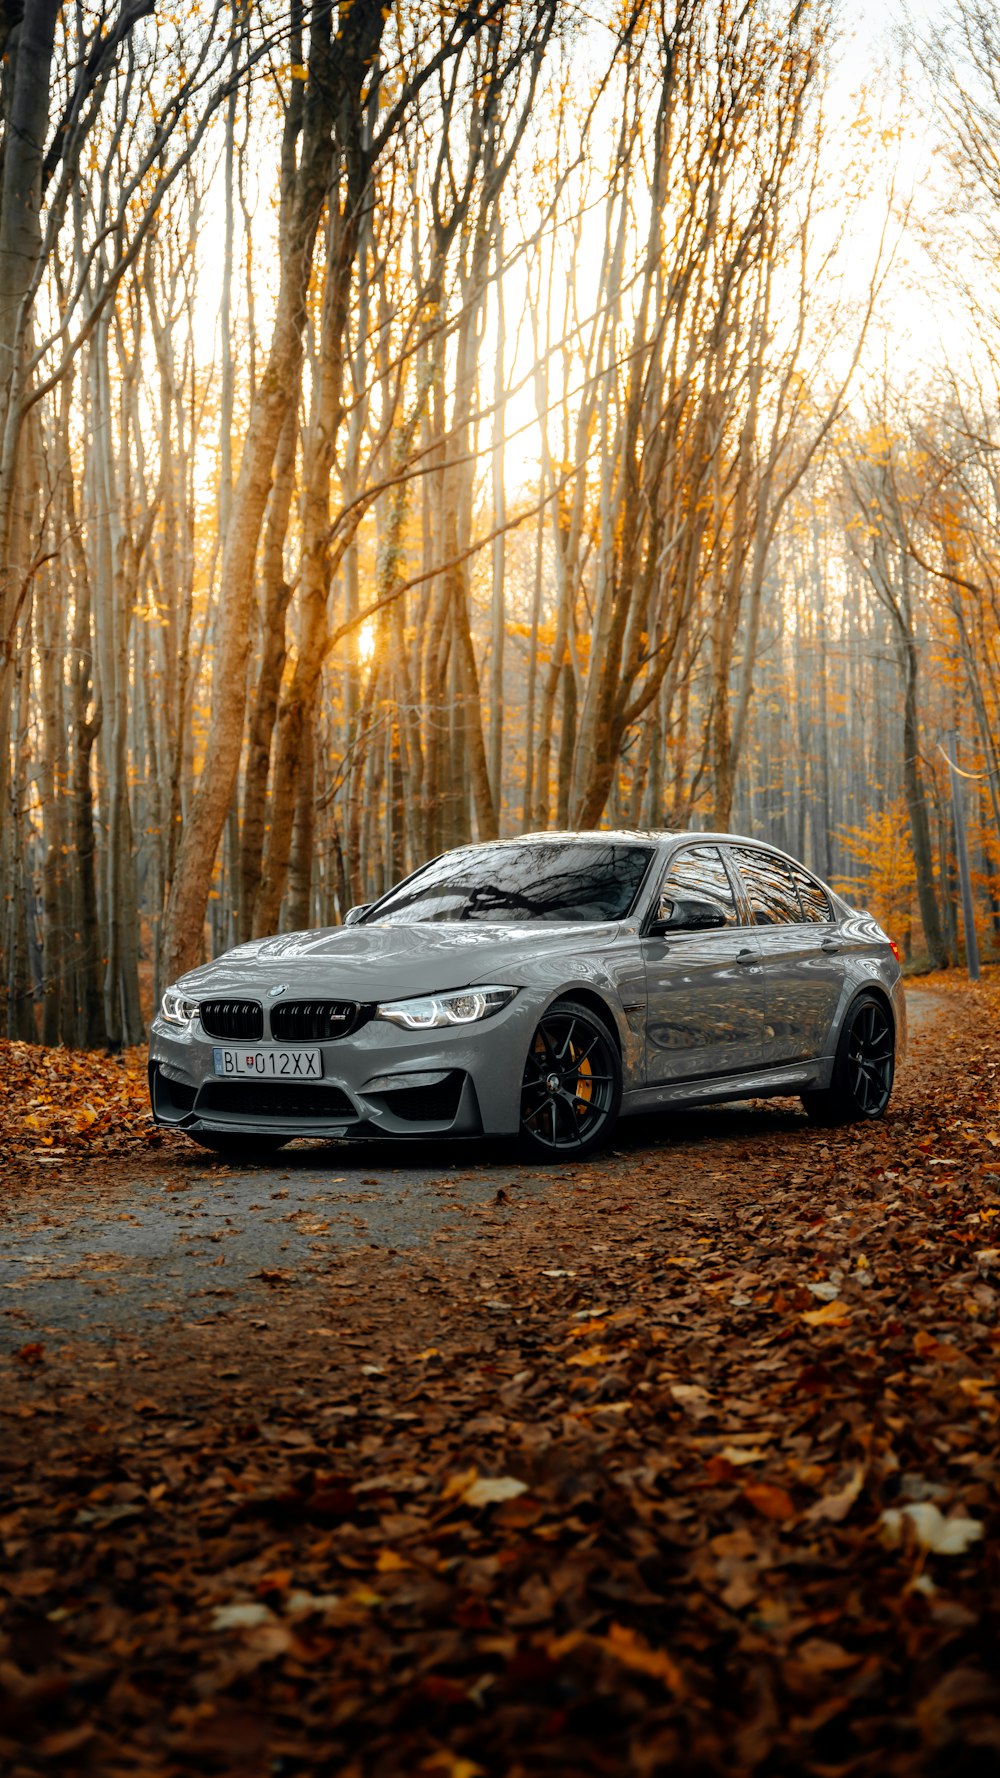 Hình nền BMW: Trải nghiệm không gian lái xe hiện đại và sang trọng với những hình nền BMW đẹp lung linh. Với đầy đủ các dòng xe hạng sang, các phụ kiện độc đáo và các biến thể màu sắc khác nhau, bạn sẽ ngất ngây trước vẻ đẹp của các chiếc xe BMW khi đặt làm hình nền cho màn hình của mình.